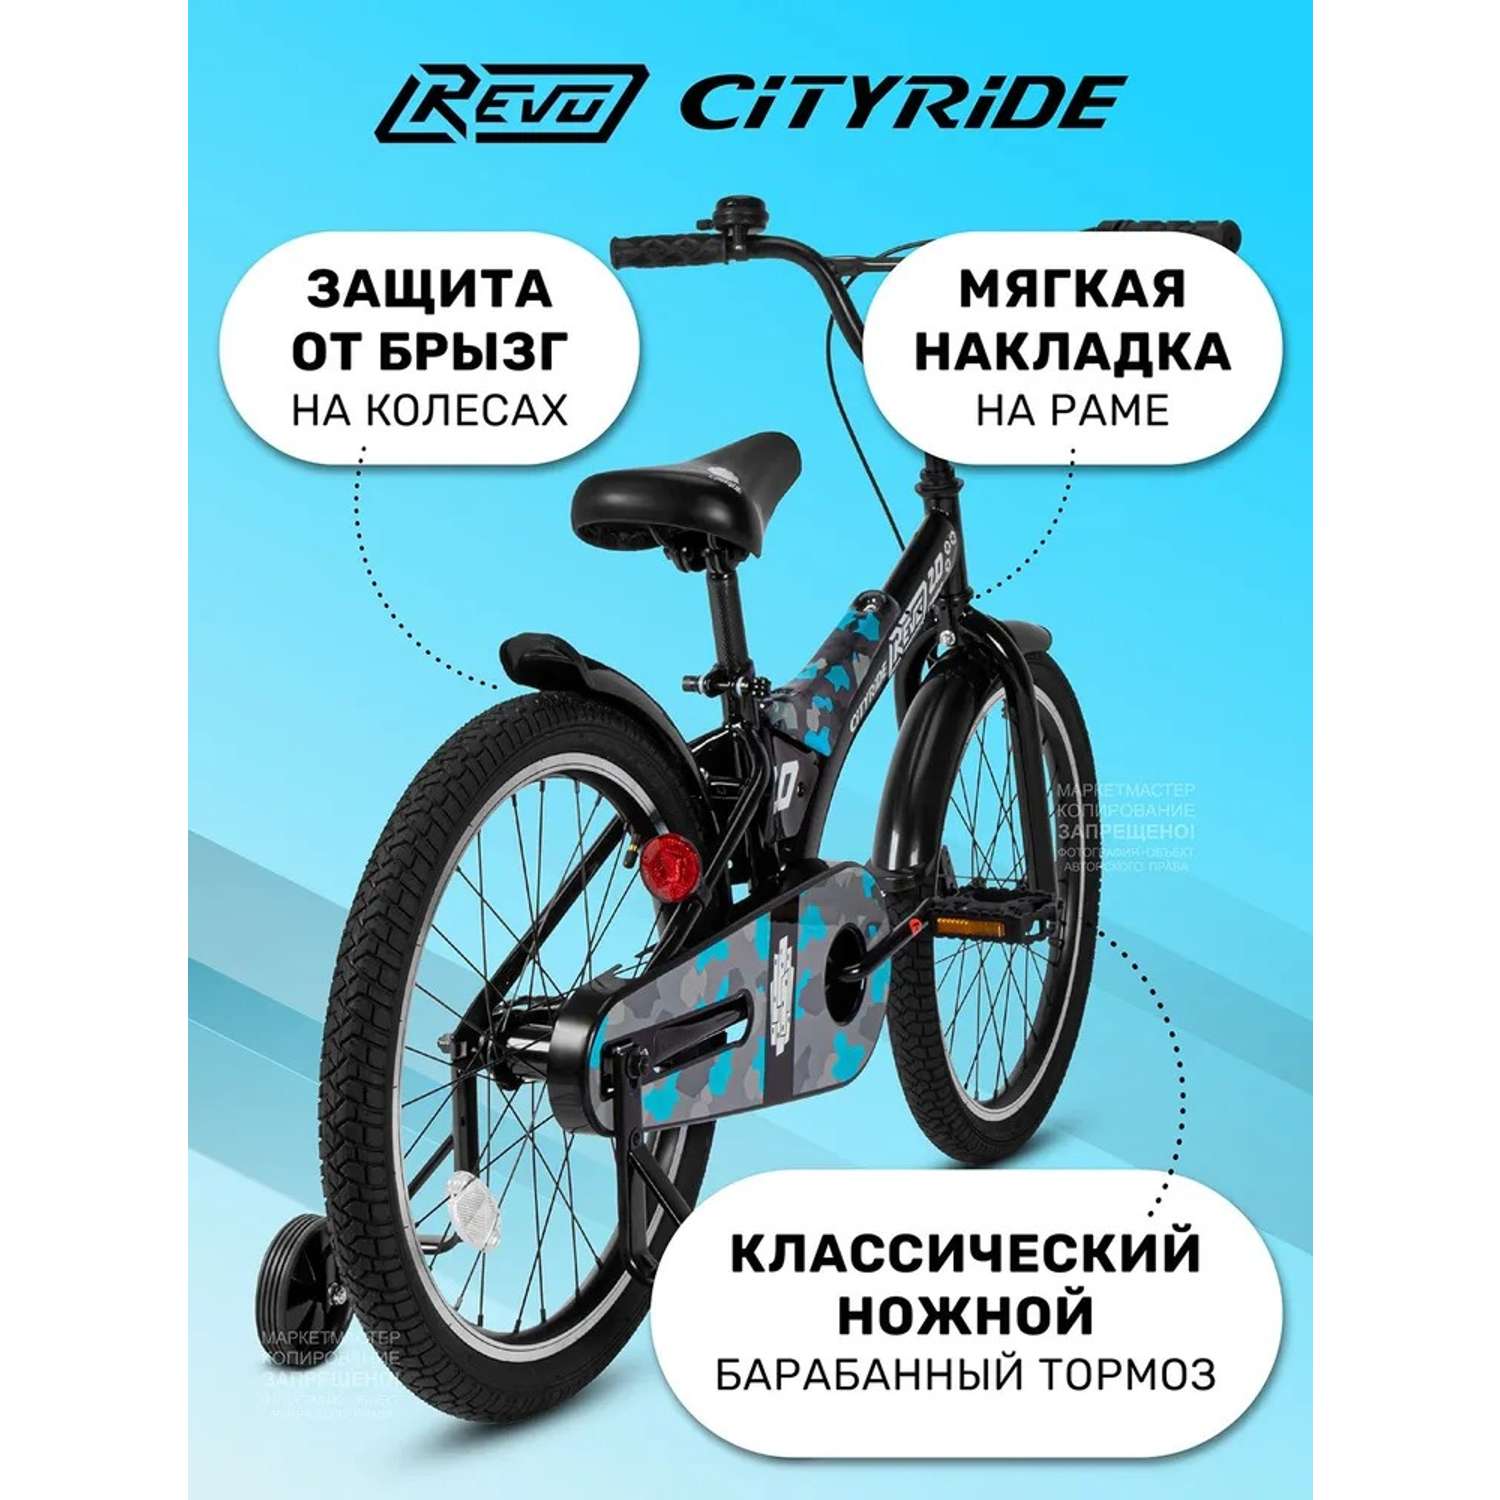 Детский велосипед CITYRIDE Двухколесный Cityride REVO Рама сталь Кожух цепи 100% Диски алюминий 20 Втулки сталь - фото 4